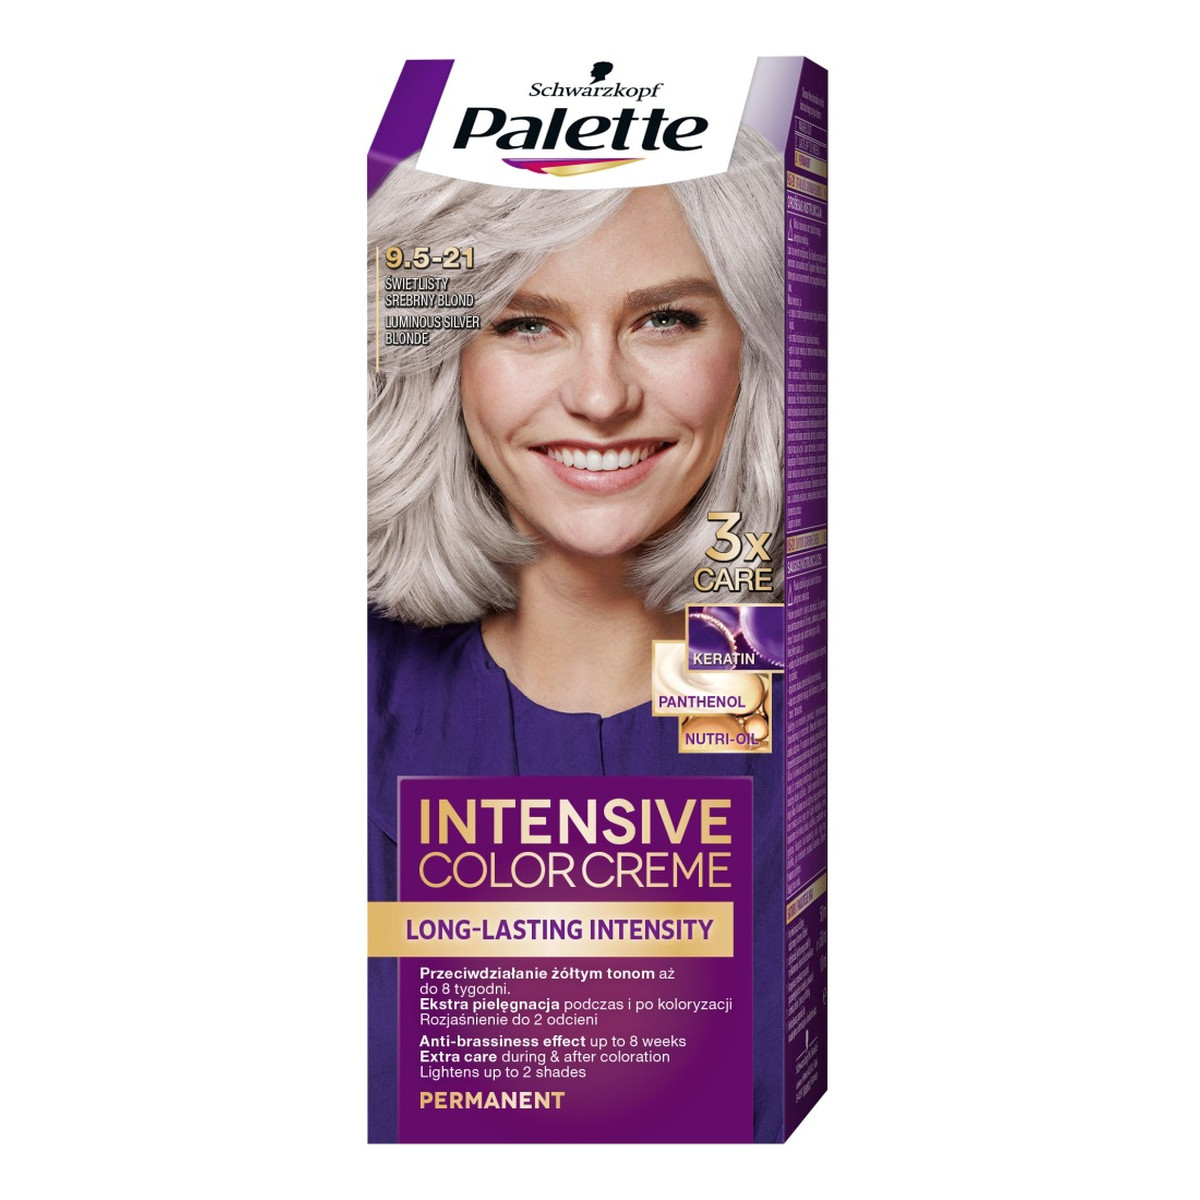 Palette Intensive Color Creme farba do włosów w Kremie 9.5-21 świetlisty srebrny blond